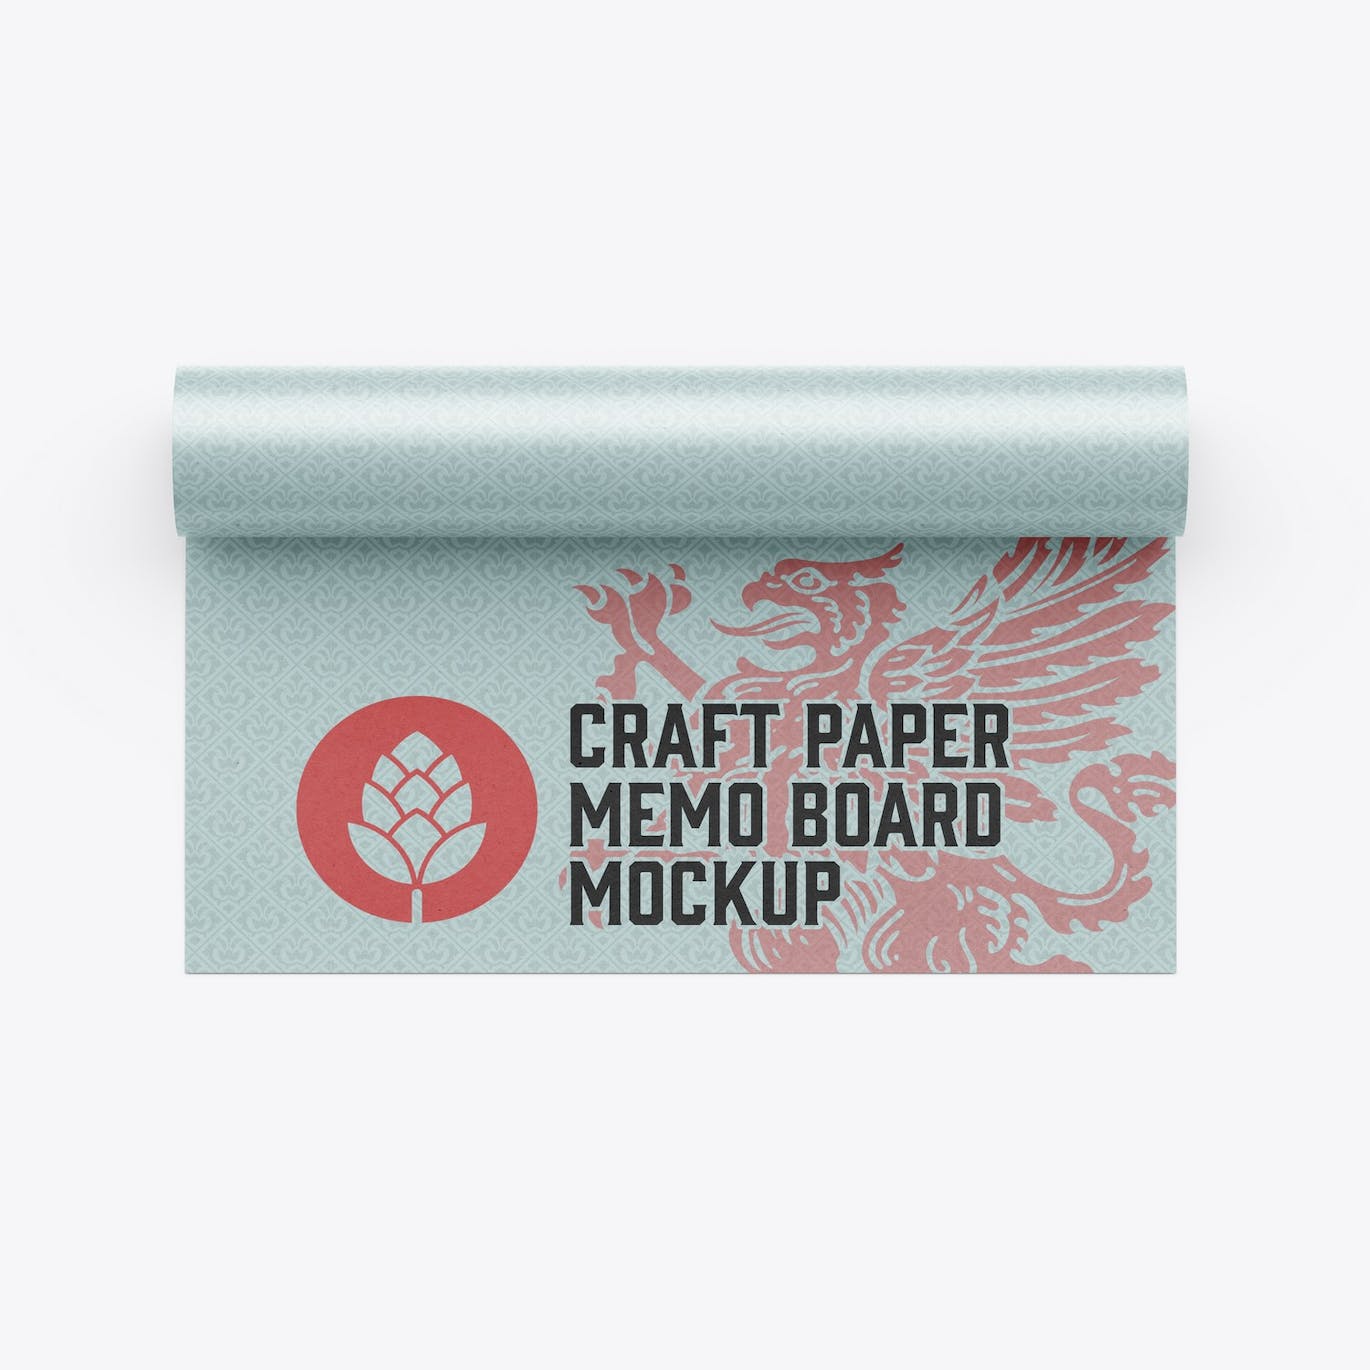 纸卷图案Logo设计样机 Paper Roll Mockup 样机素材 第10张